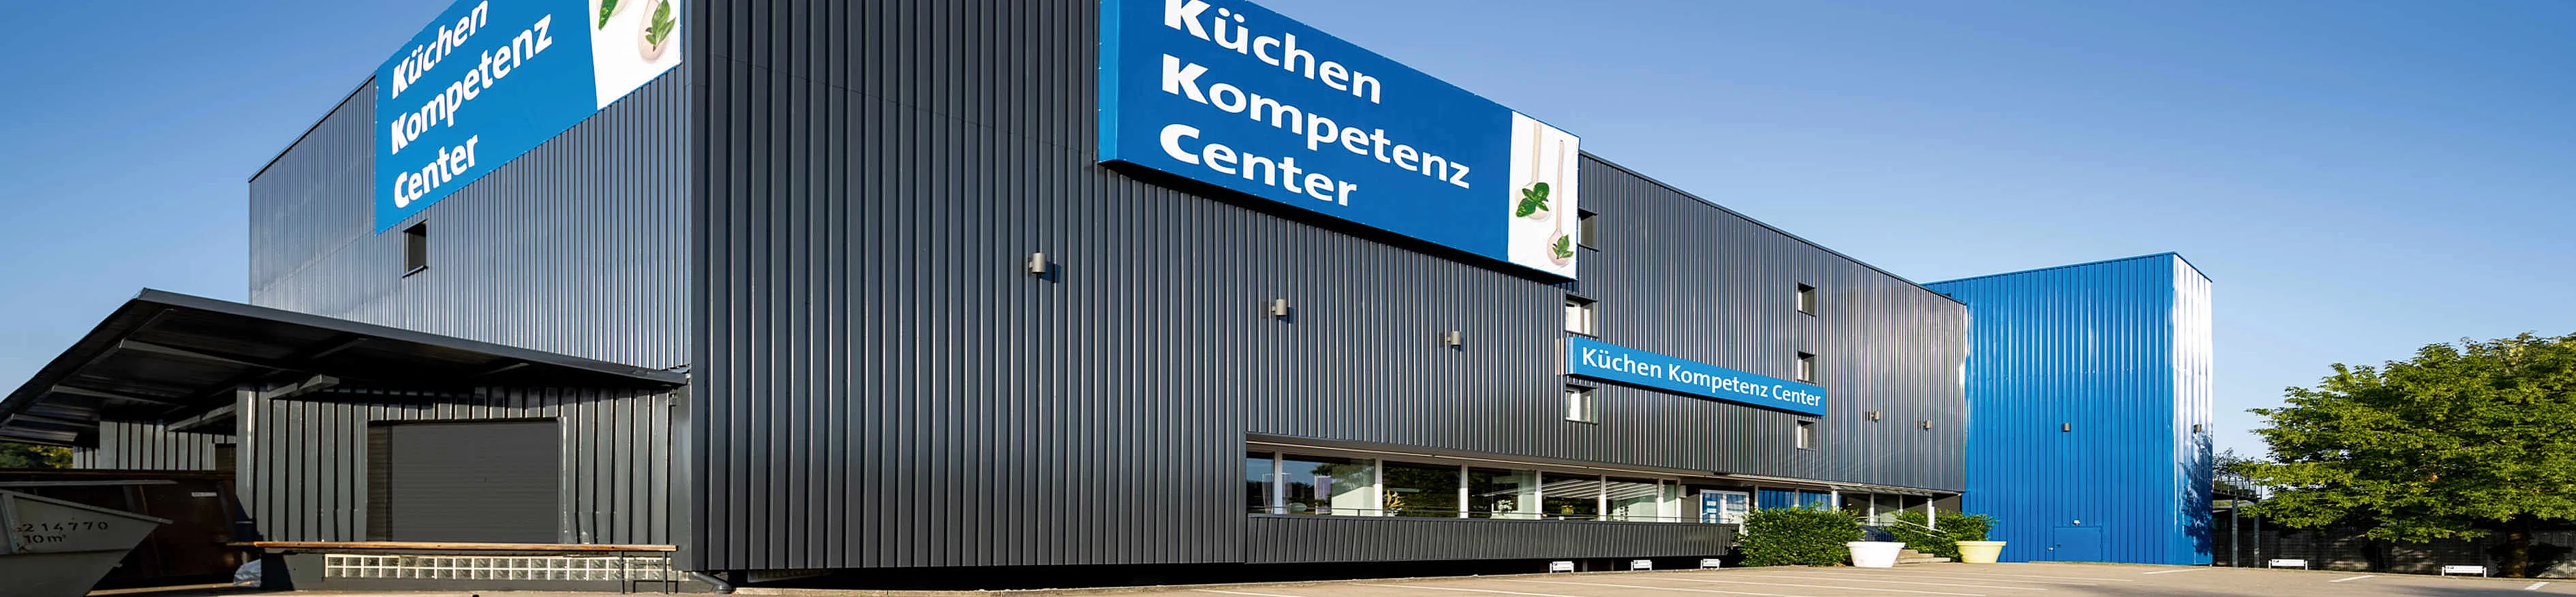 kuechen-kompetenz-center-gmbh-top-banner